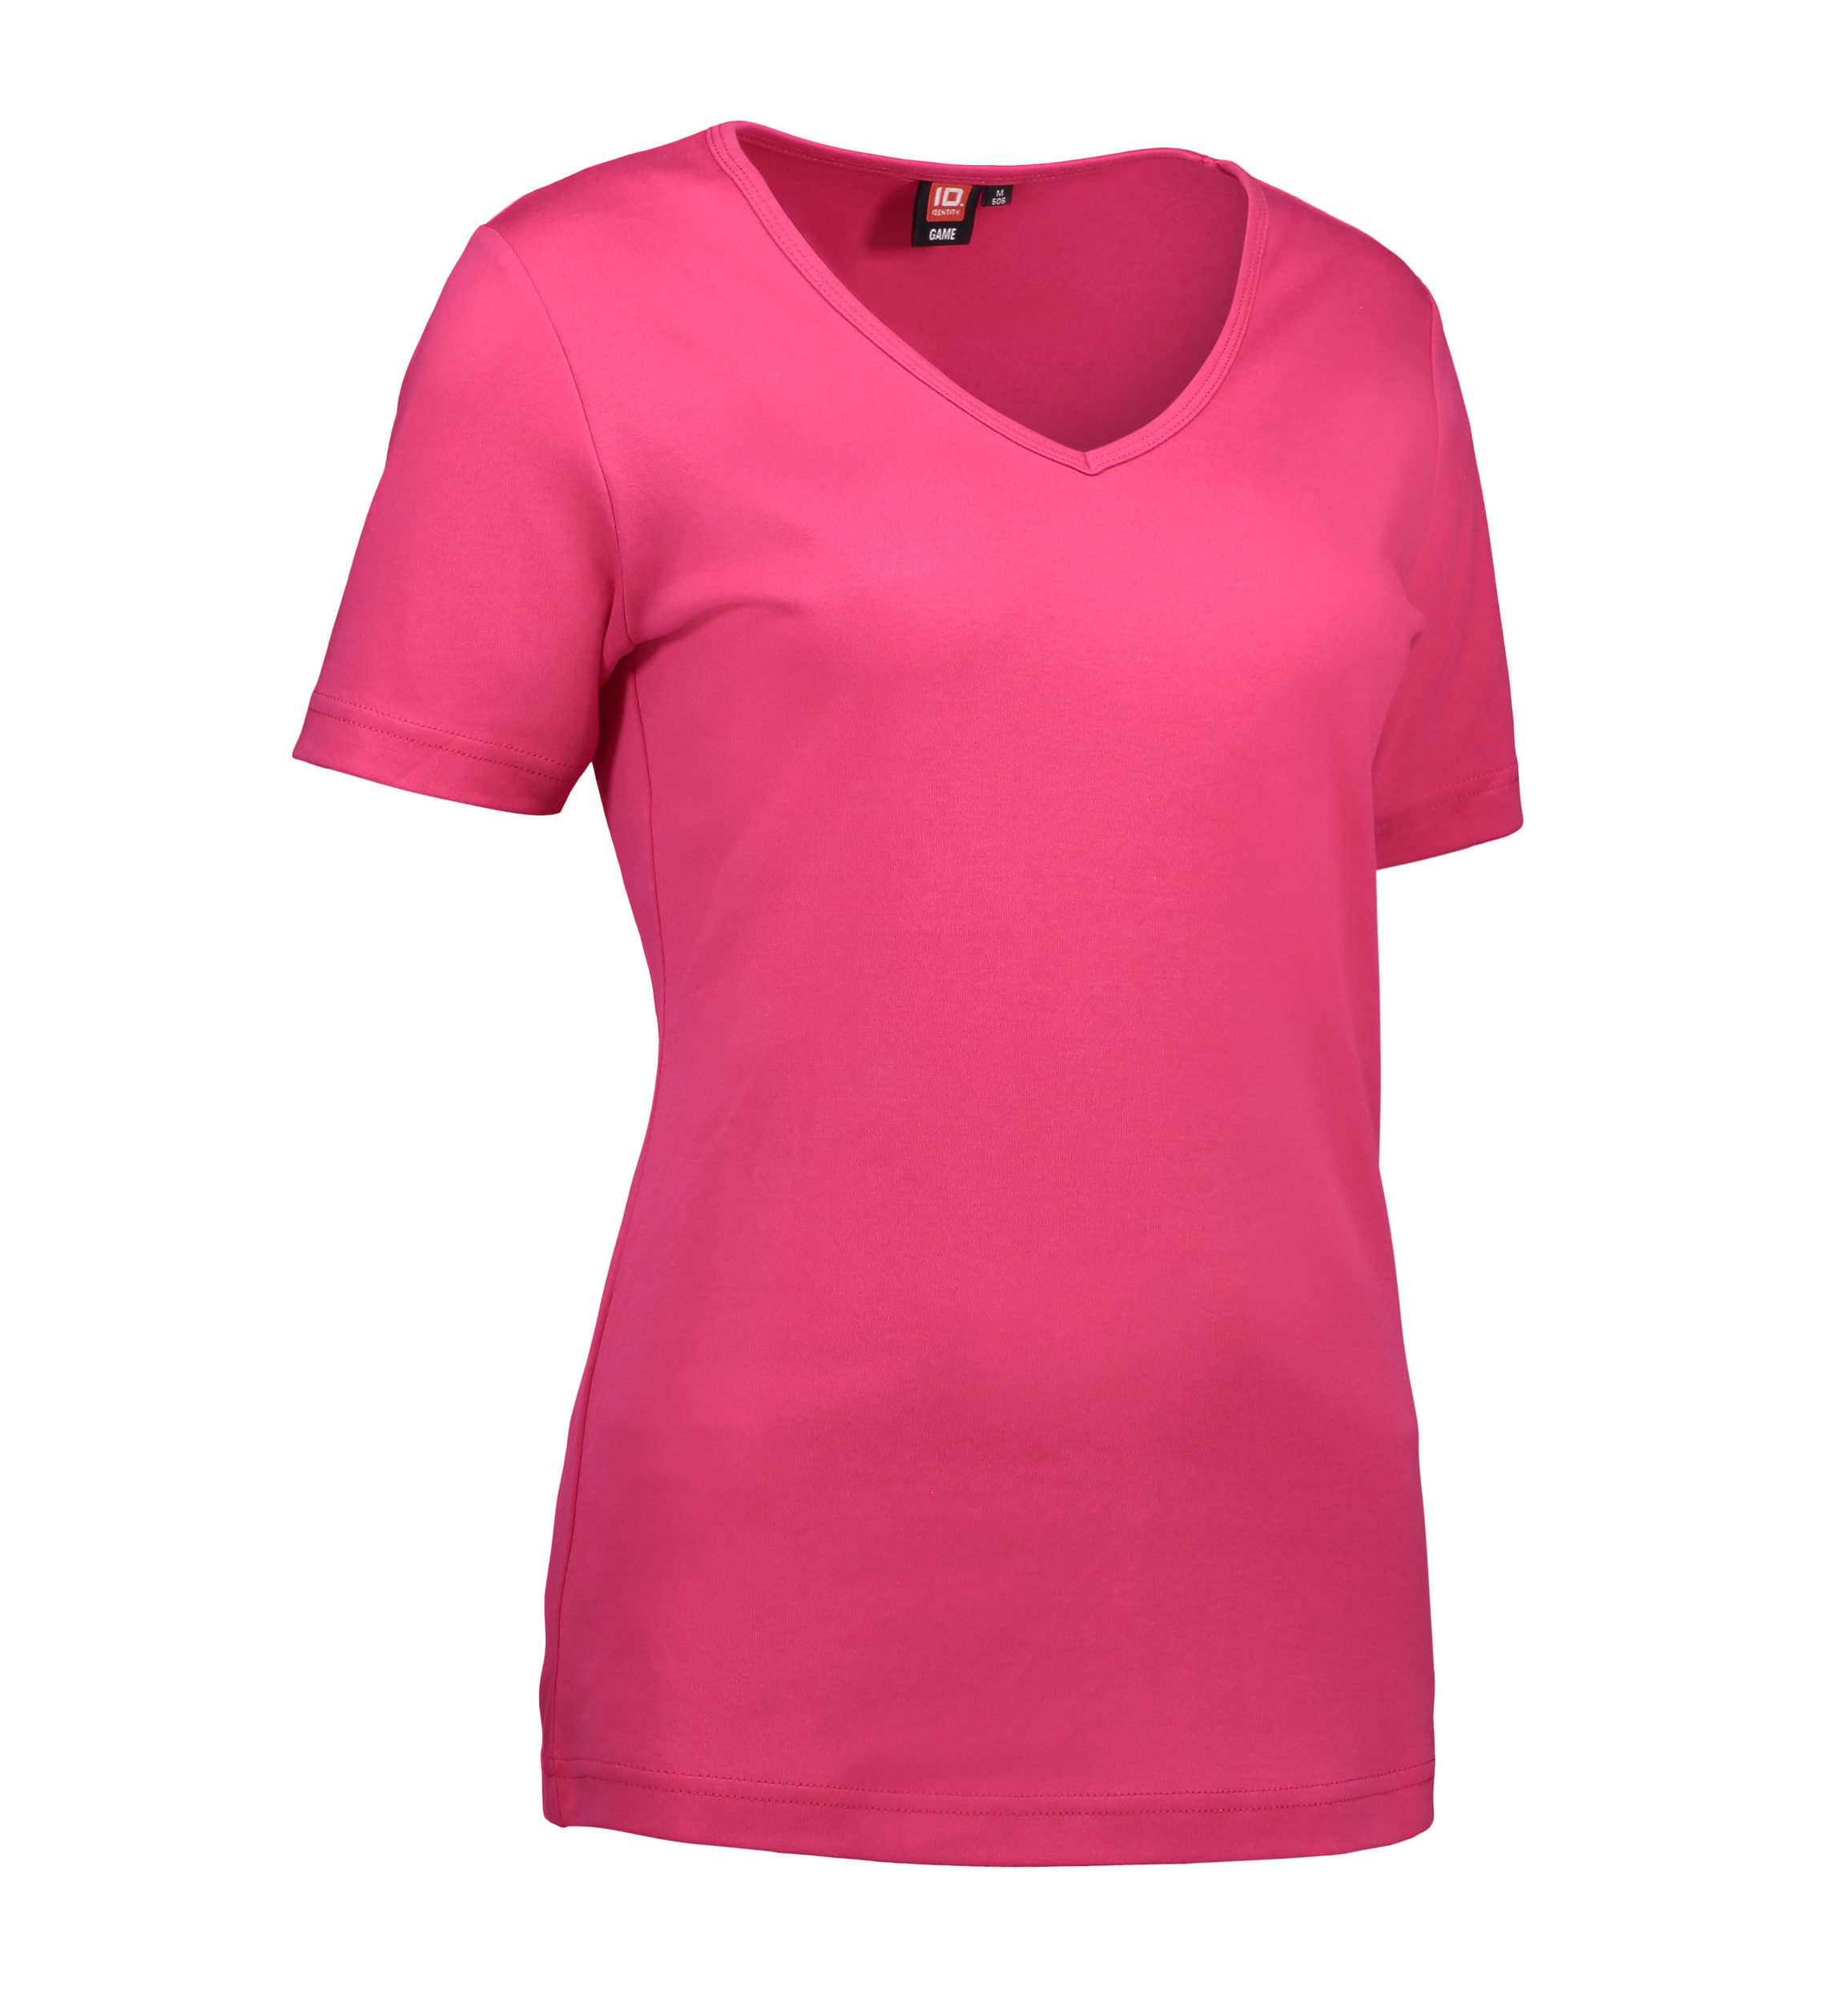 Billede af Pink dame t-shirt med v-hals - L hos Sygeplejebutikken.dk